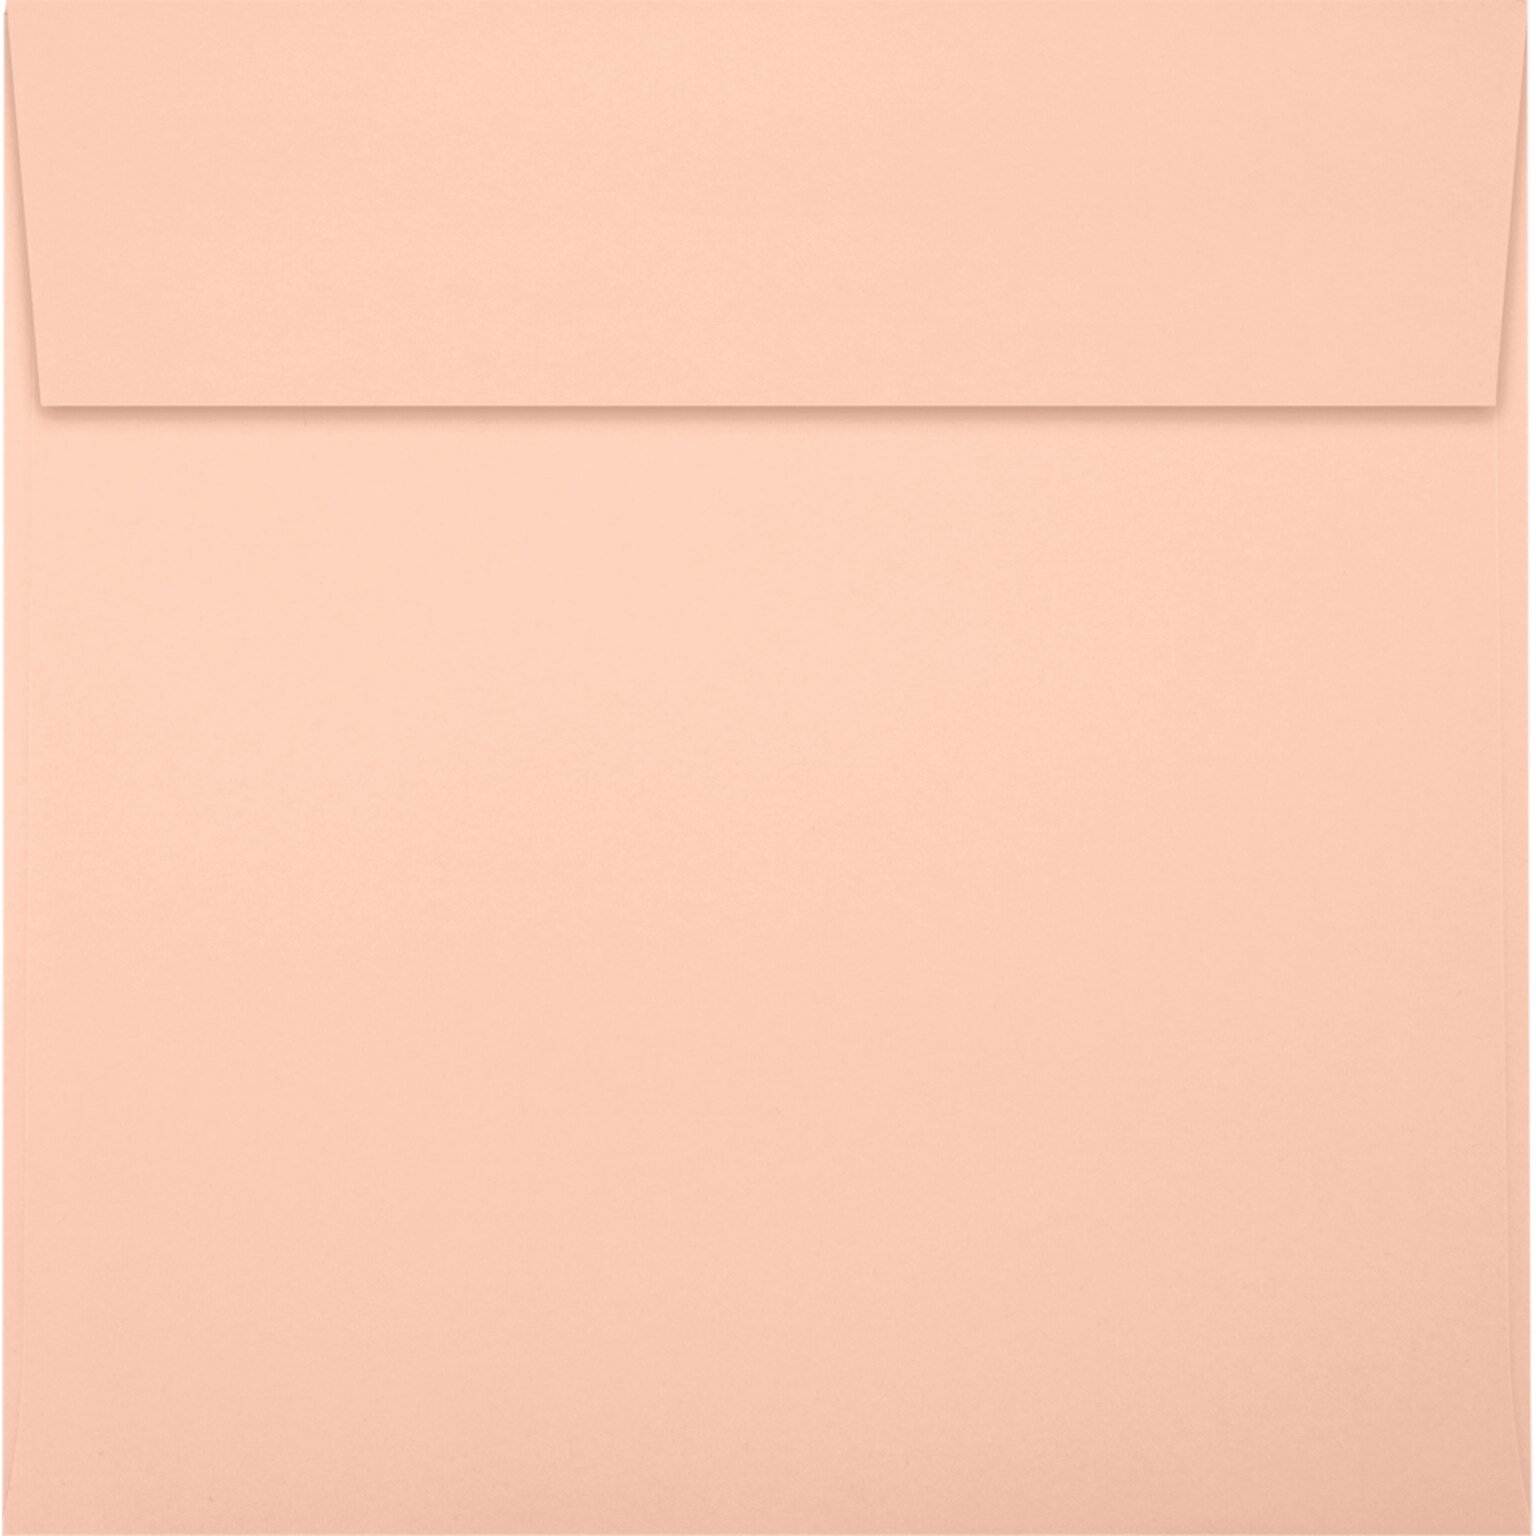 JAM Paper Square Envelopes, Peel & Press, 60lb Blush Pink, 6 1/4 x 6 1/4, 50 Pack, (8530-114-50)